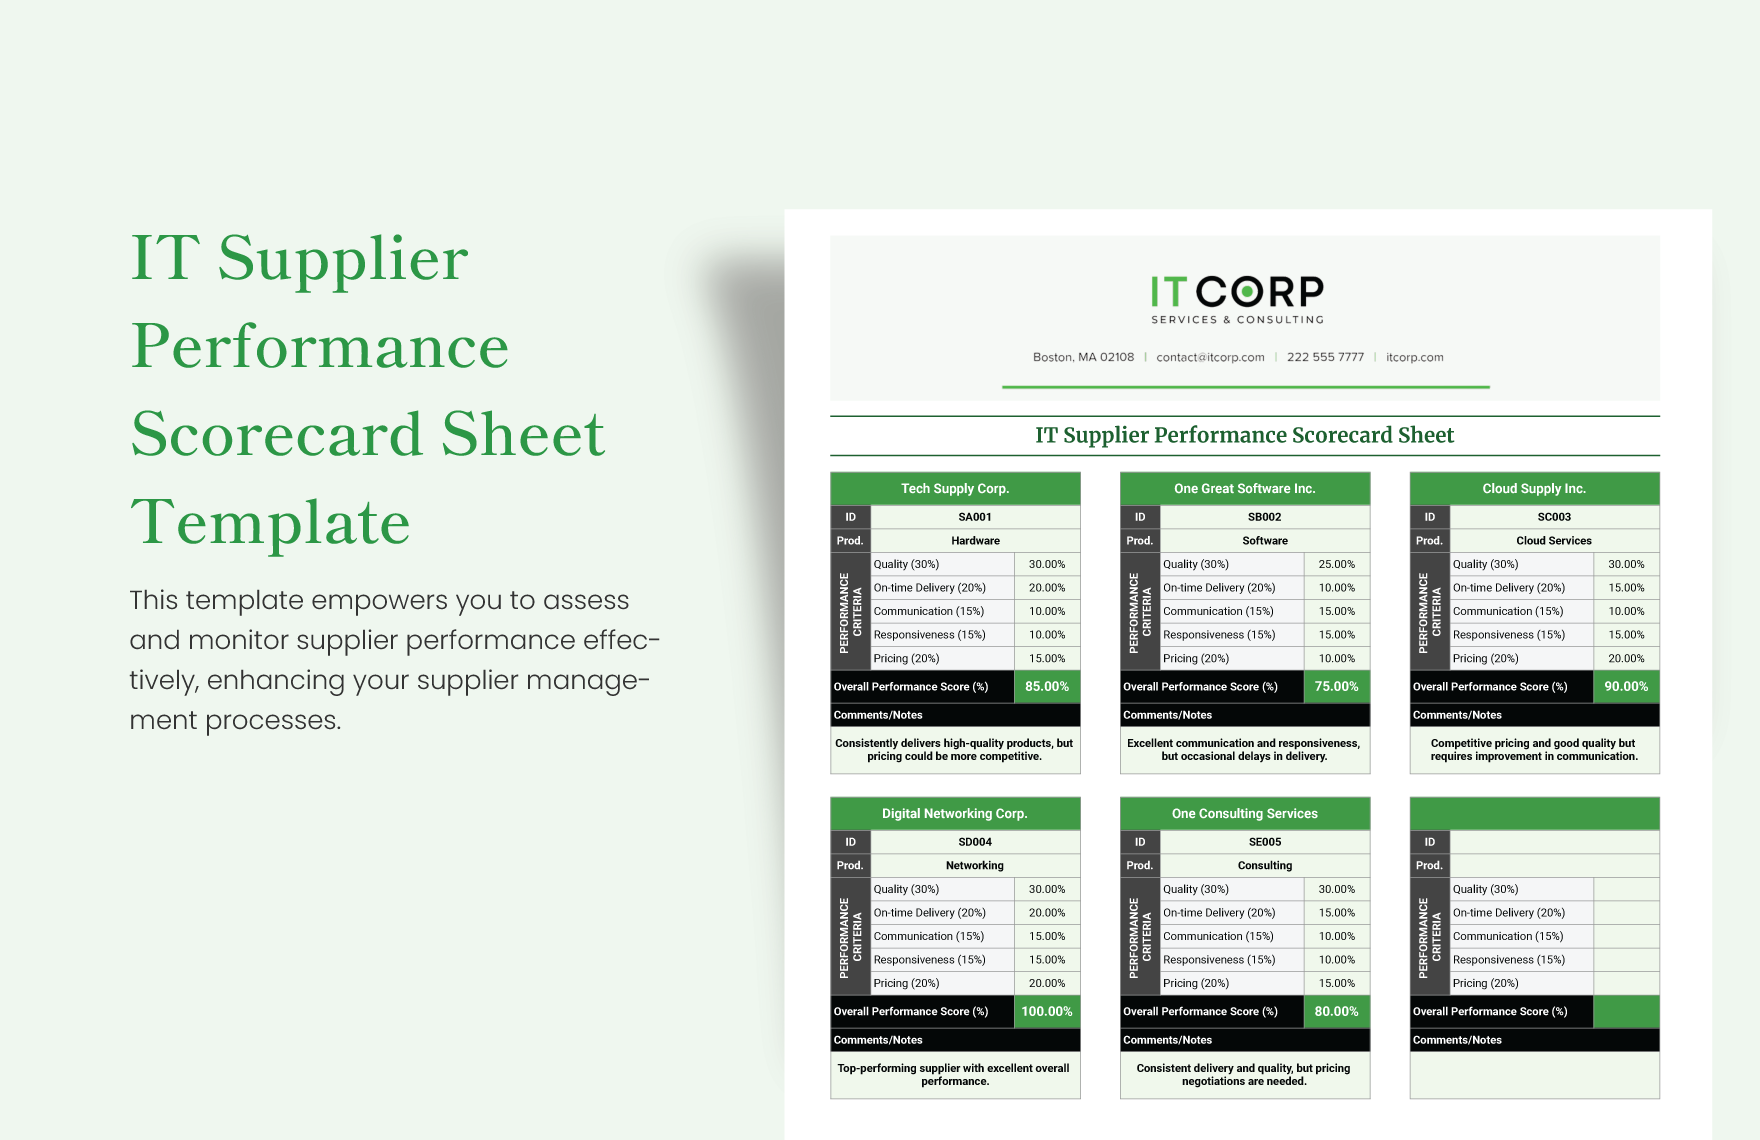 IT Supplier Performance Scorecard Sheet Template